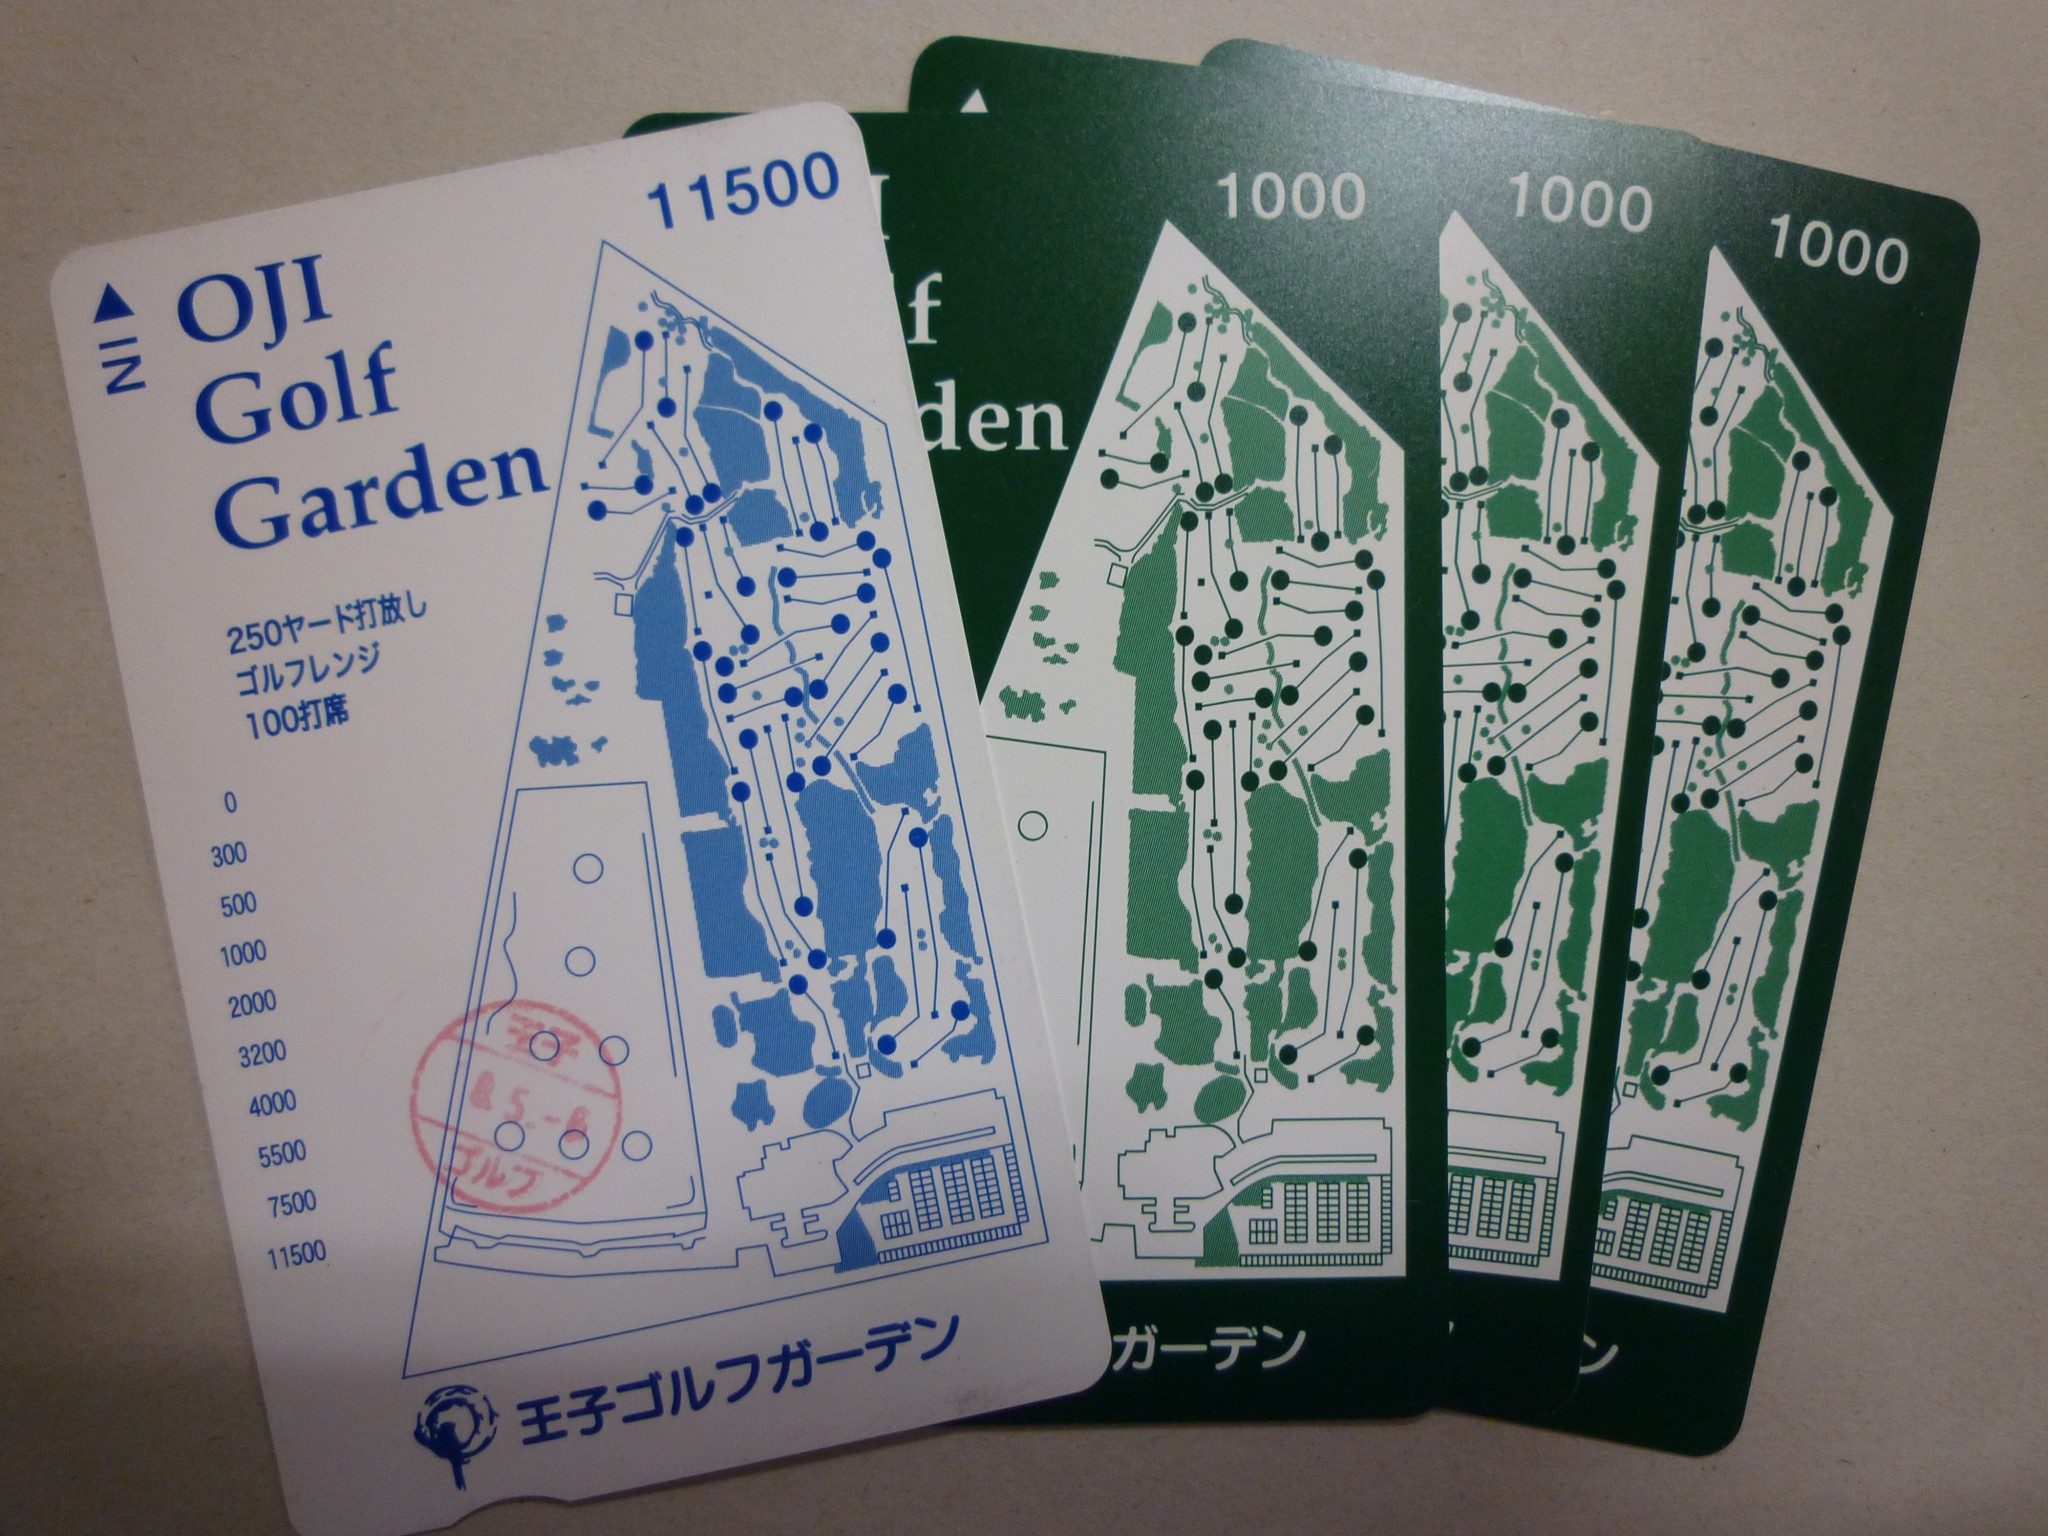 ゴルフ練習場プリペイドカード3 | 金券・切手・コインの買取と販売